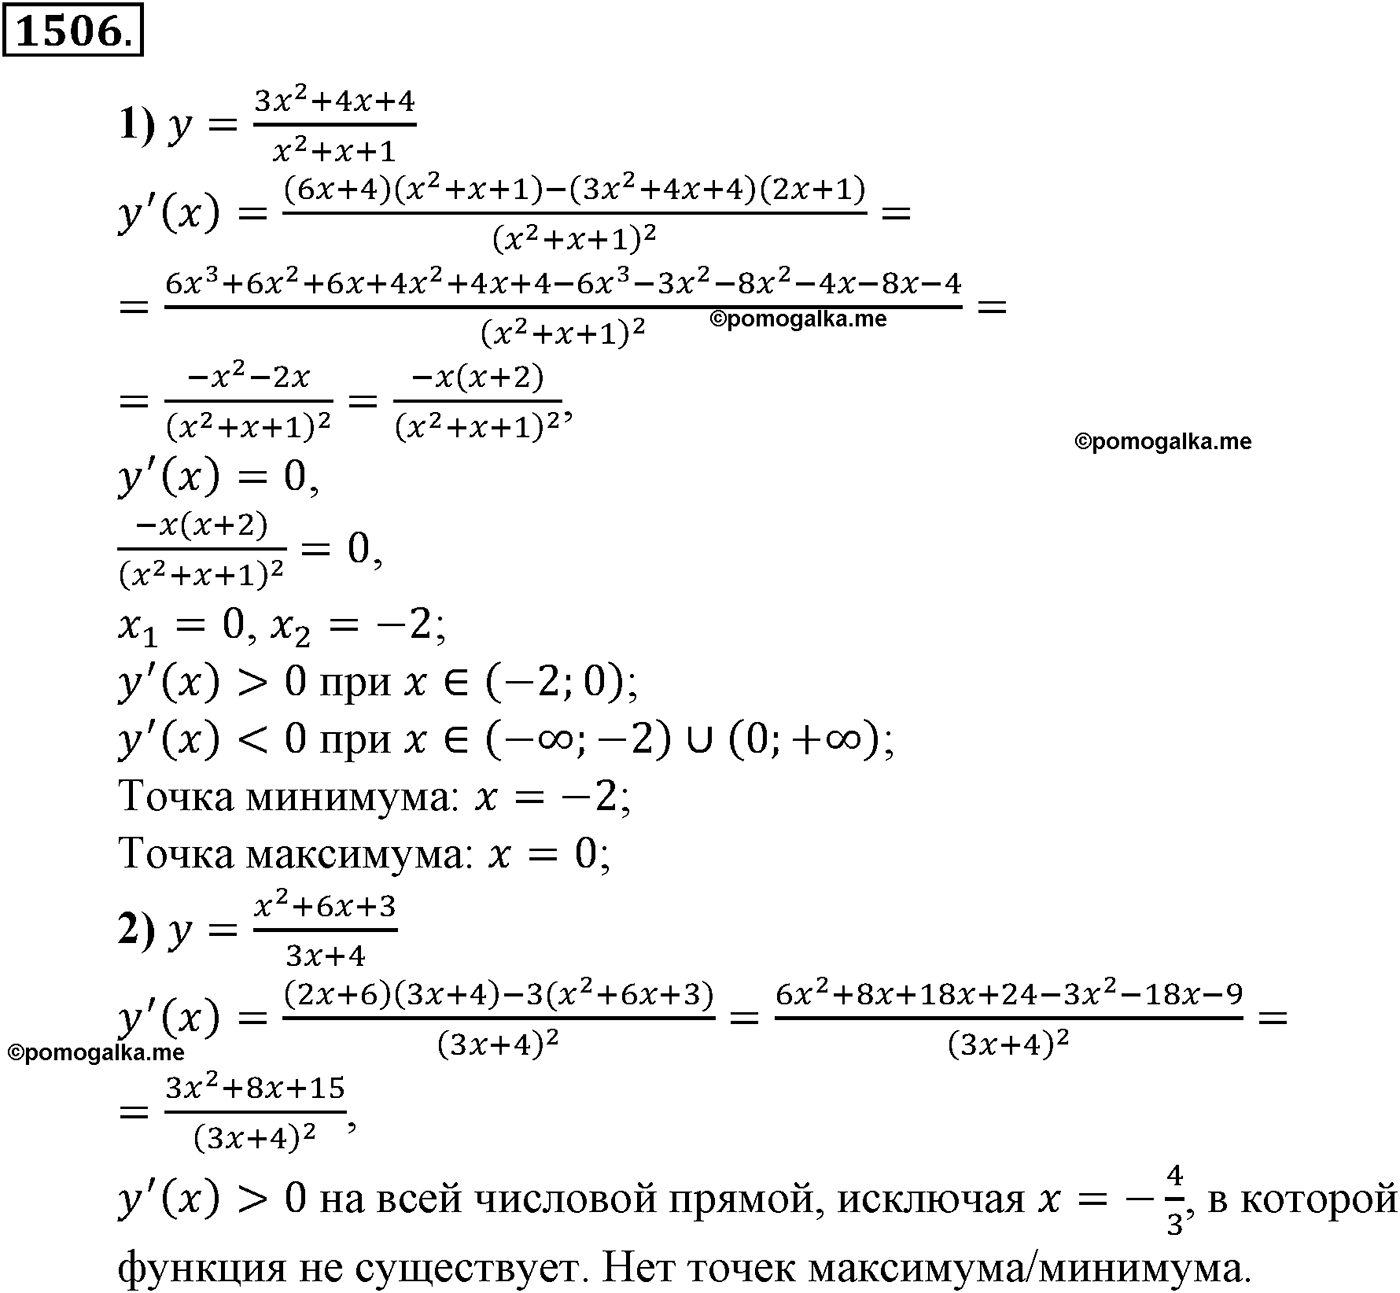 разбор задачи №1506 по алгебре за 10-11 класс из учебника Алимова, Колягина